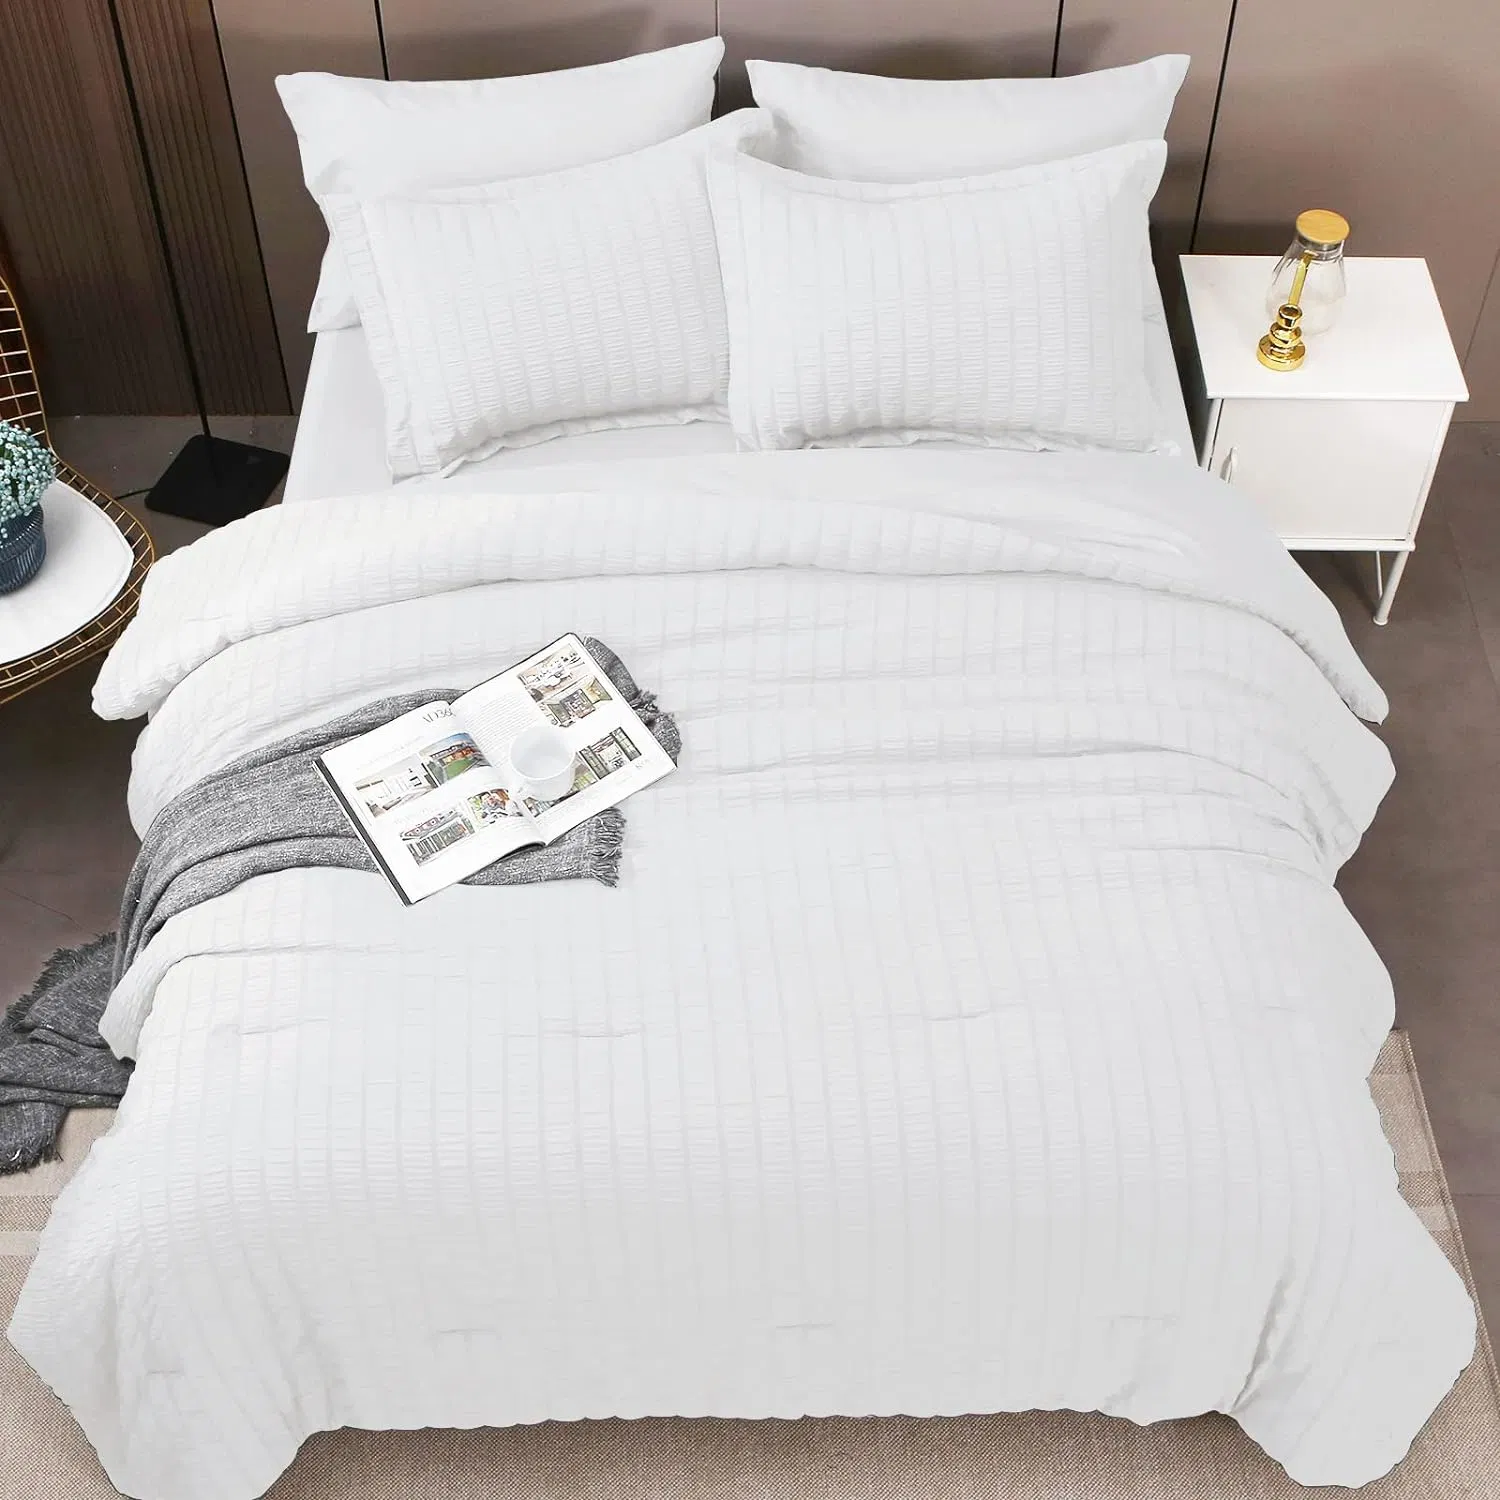 مجموعة من أغطية أسرّة من نوع كوين بيضاء من نوع Seerlake ذات 7 قطع مع لحاف وملاءات وأغطية وسائد وسرير شمس في حقيبة لغرف النوم